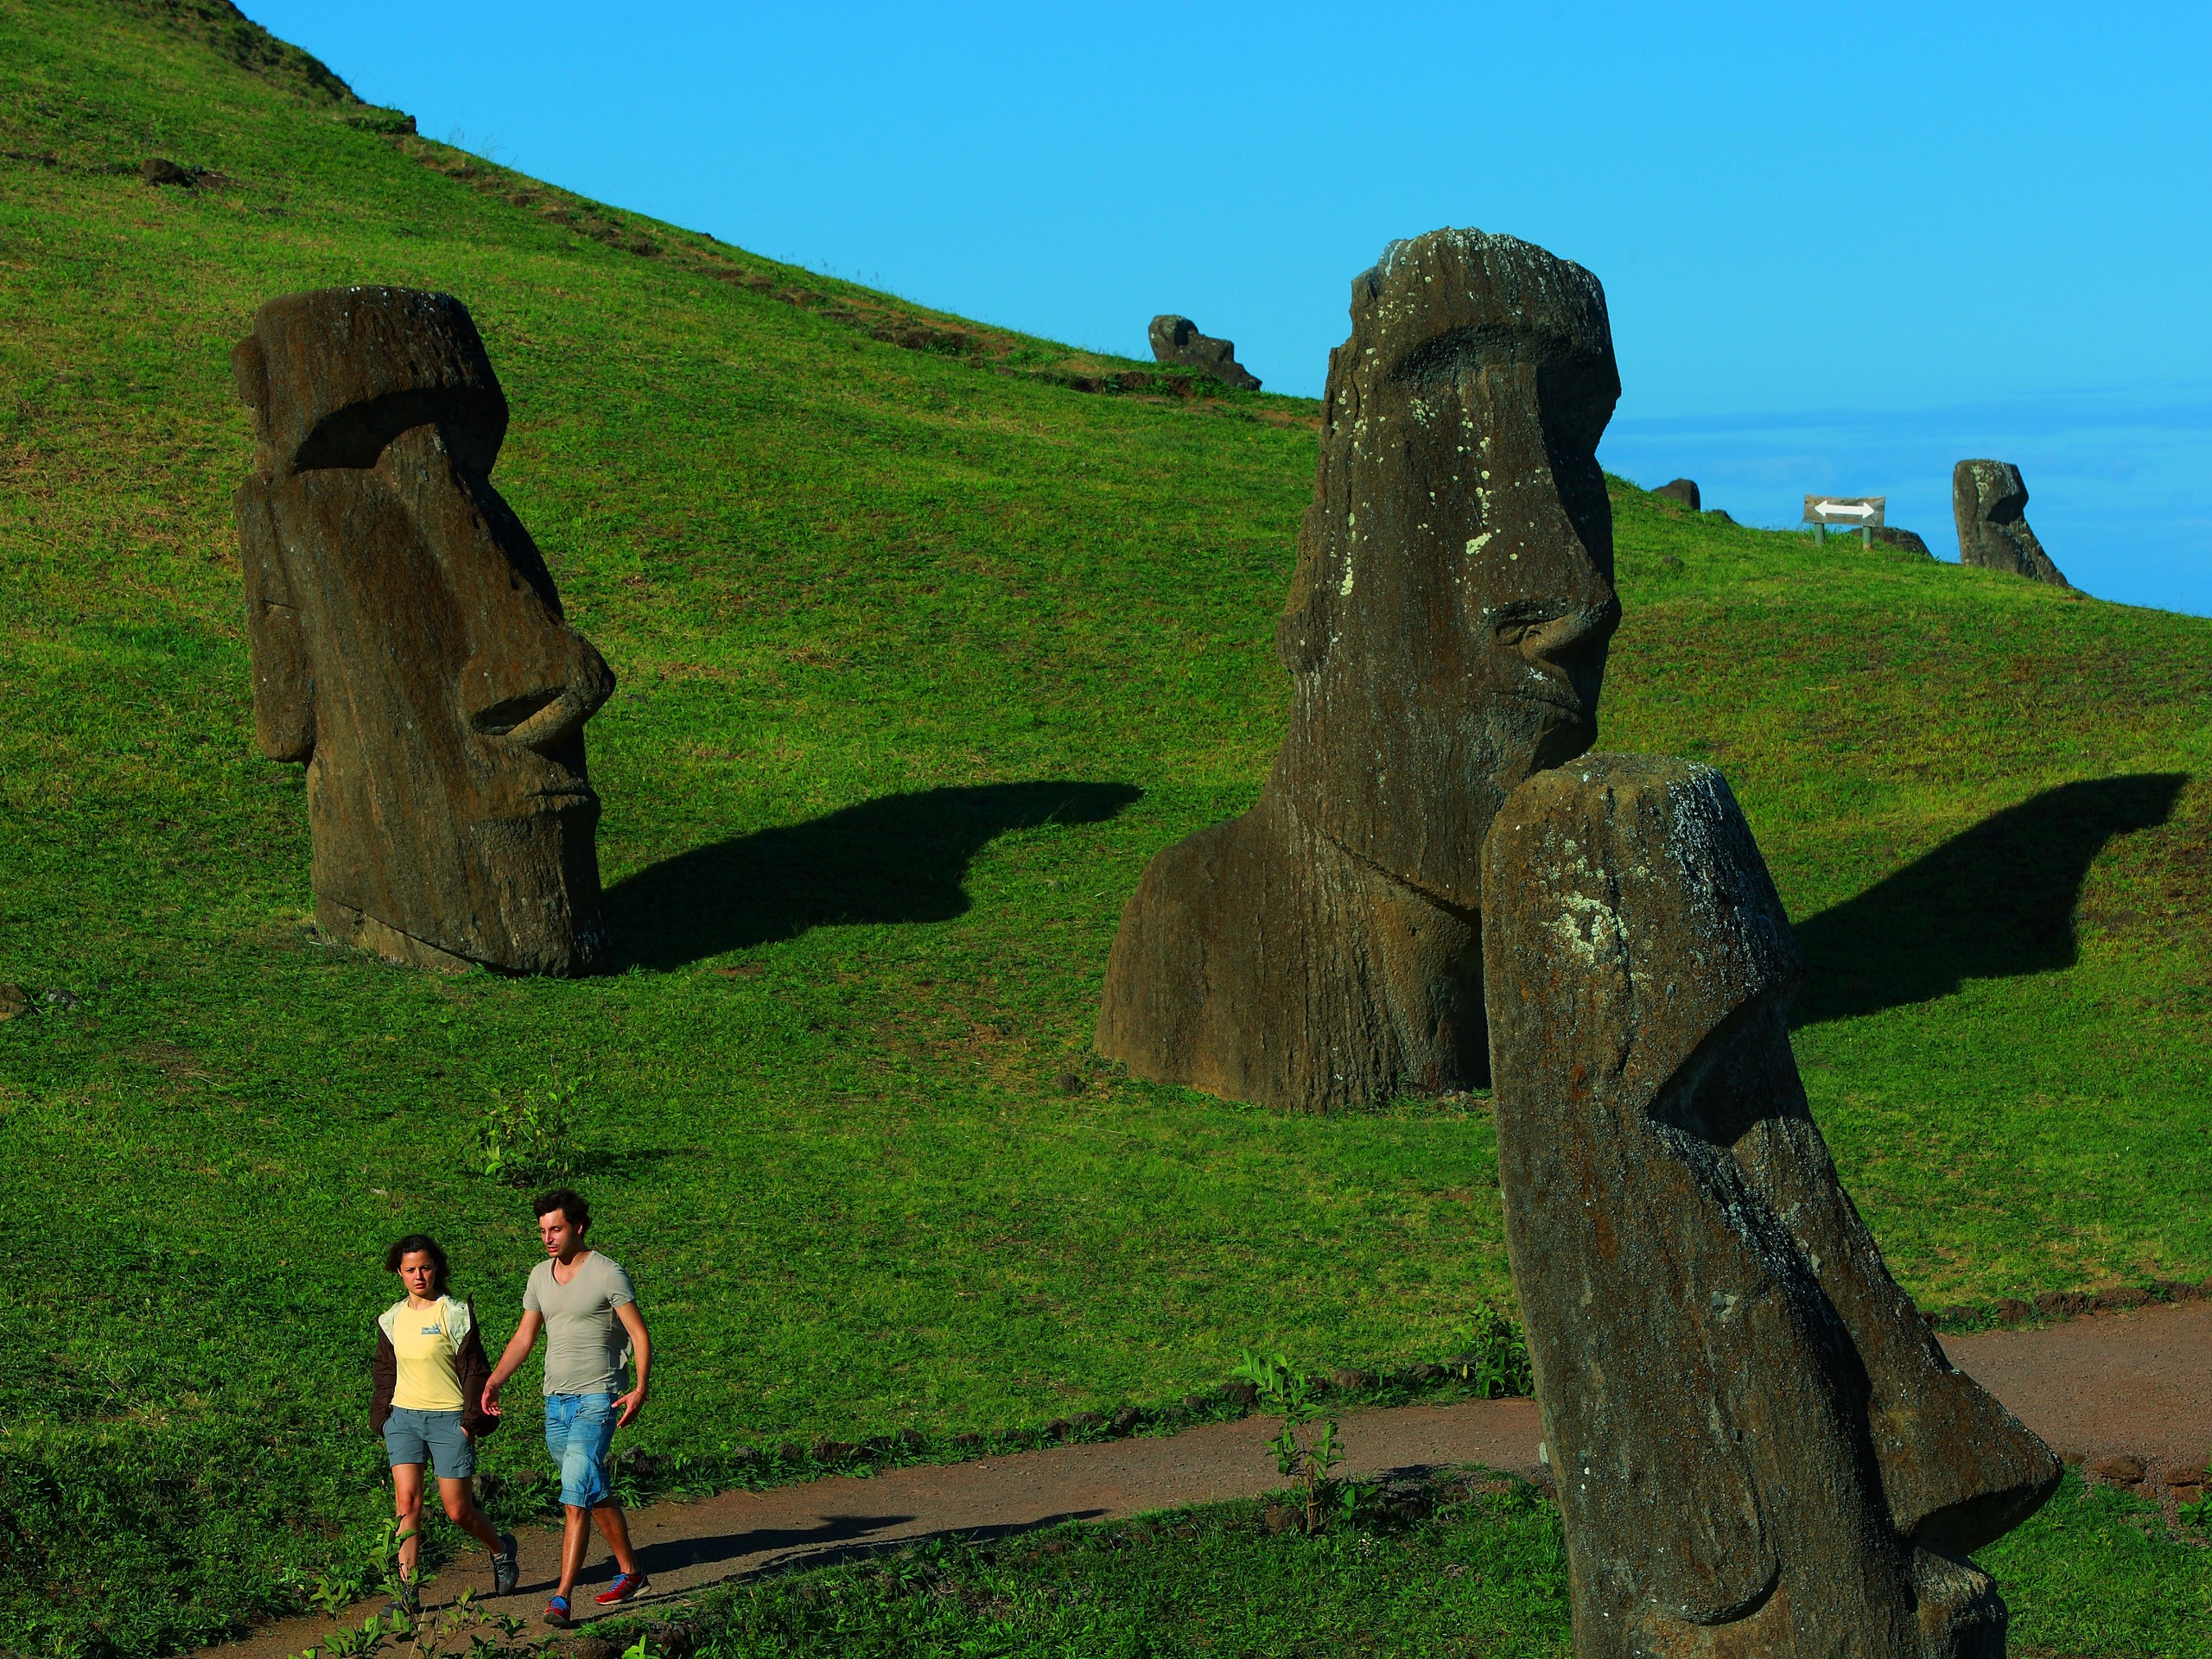 Couple walking among the stone figures of the Easter Island